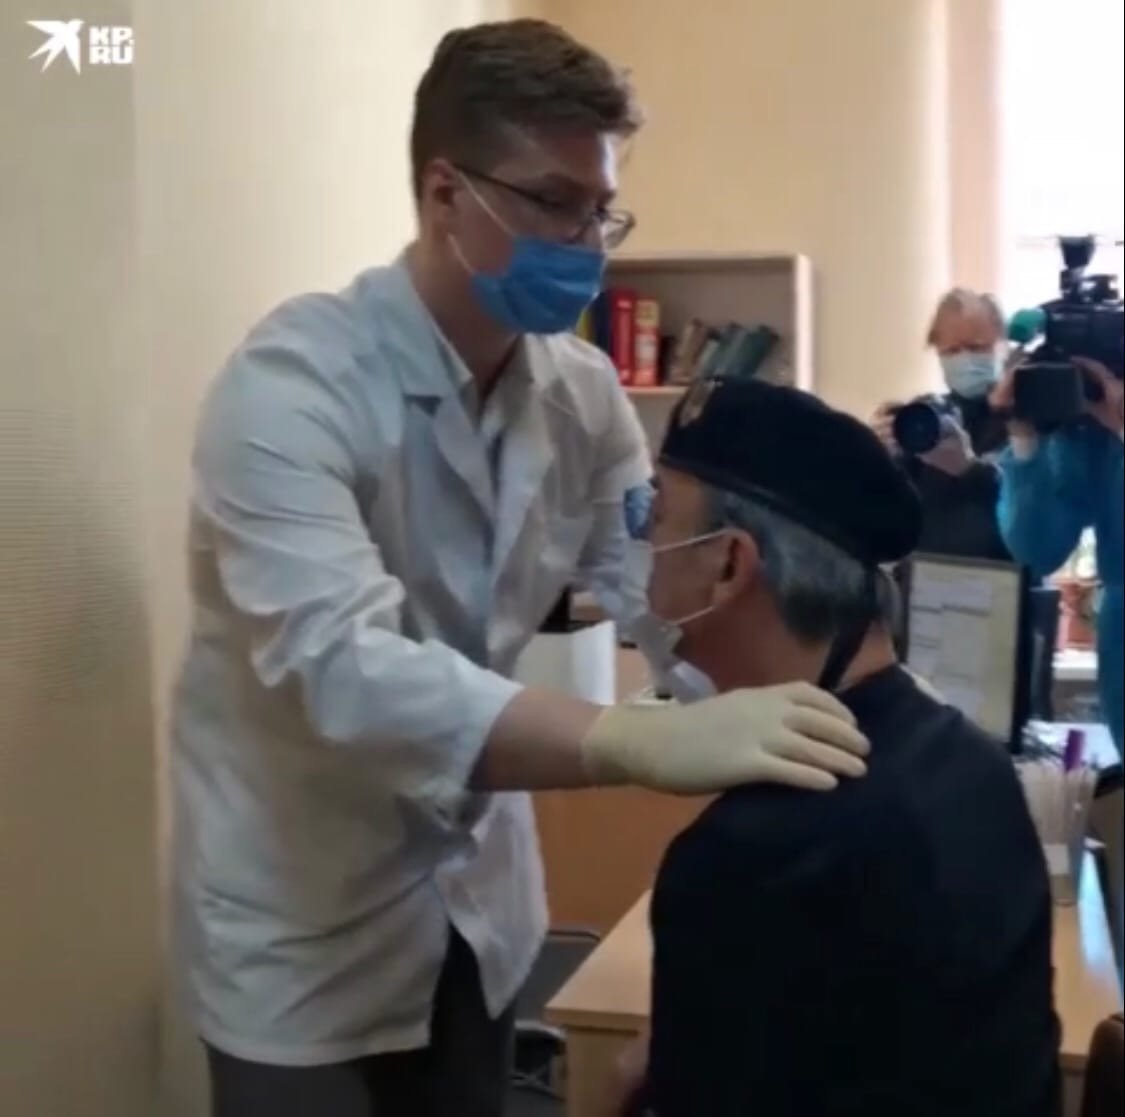 Михаил Боярский потерял сознание во время визита к врачу